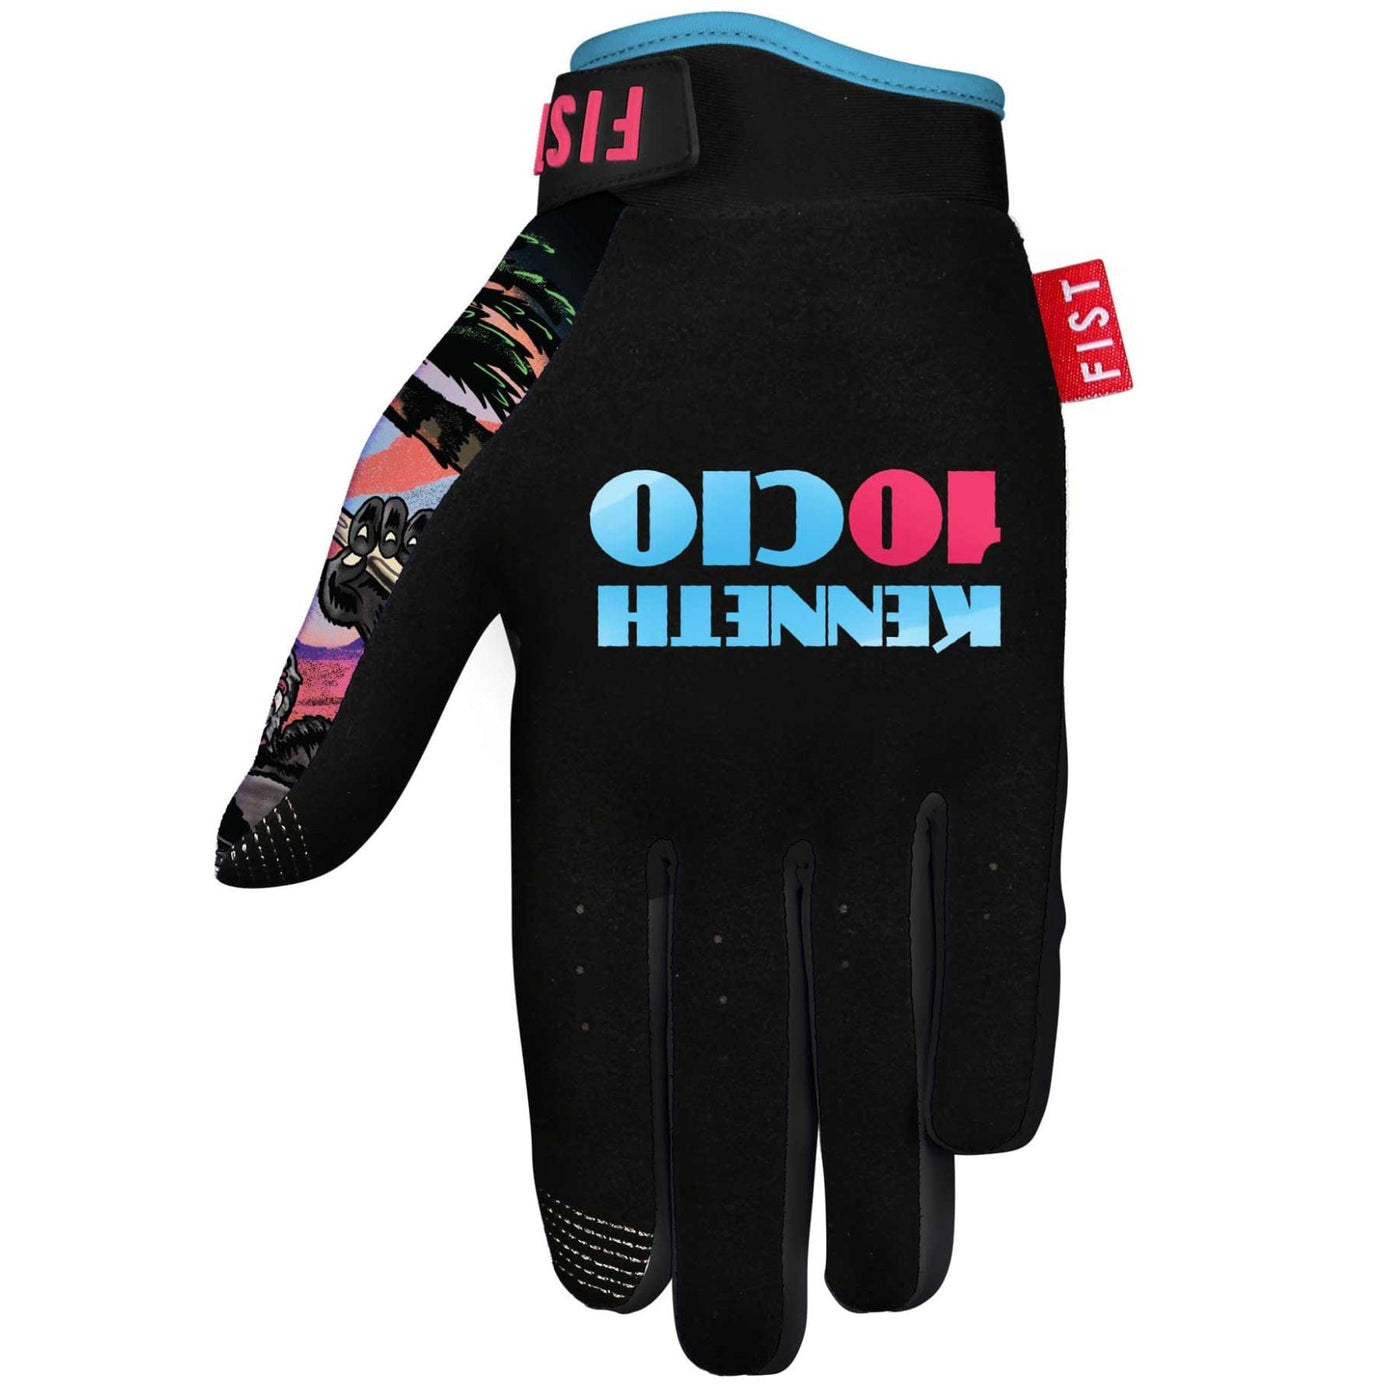 FIST Gloves - Tencio Gorilla 8Lines Shop - Fast Shipping